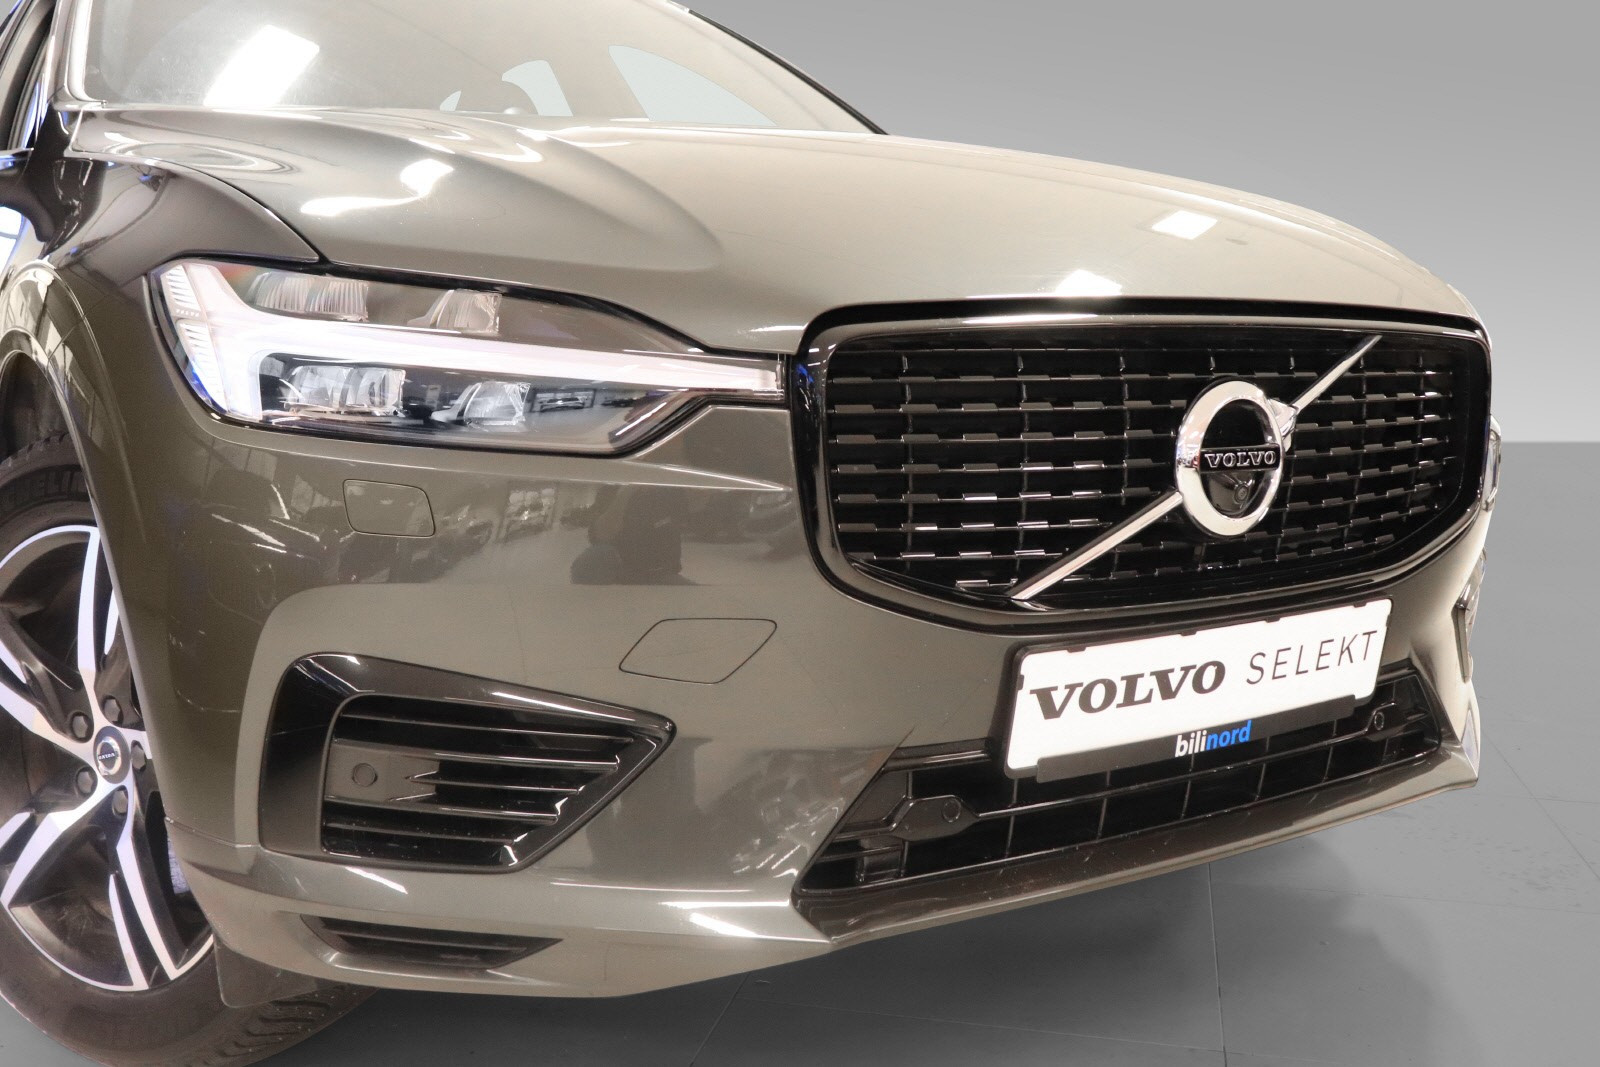 Utvidet VolvoSelektgaranti med inntil 7år eller 150.000 km